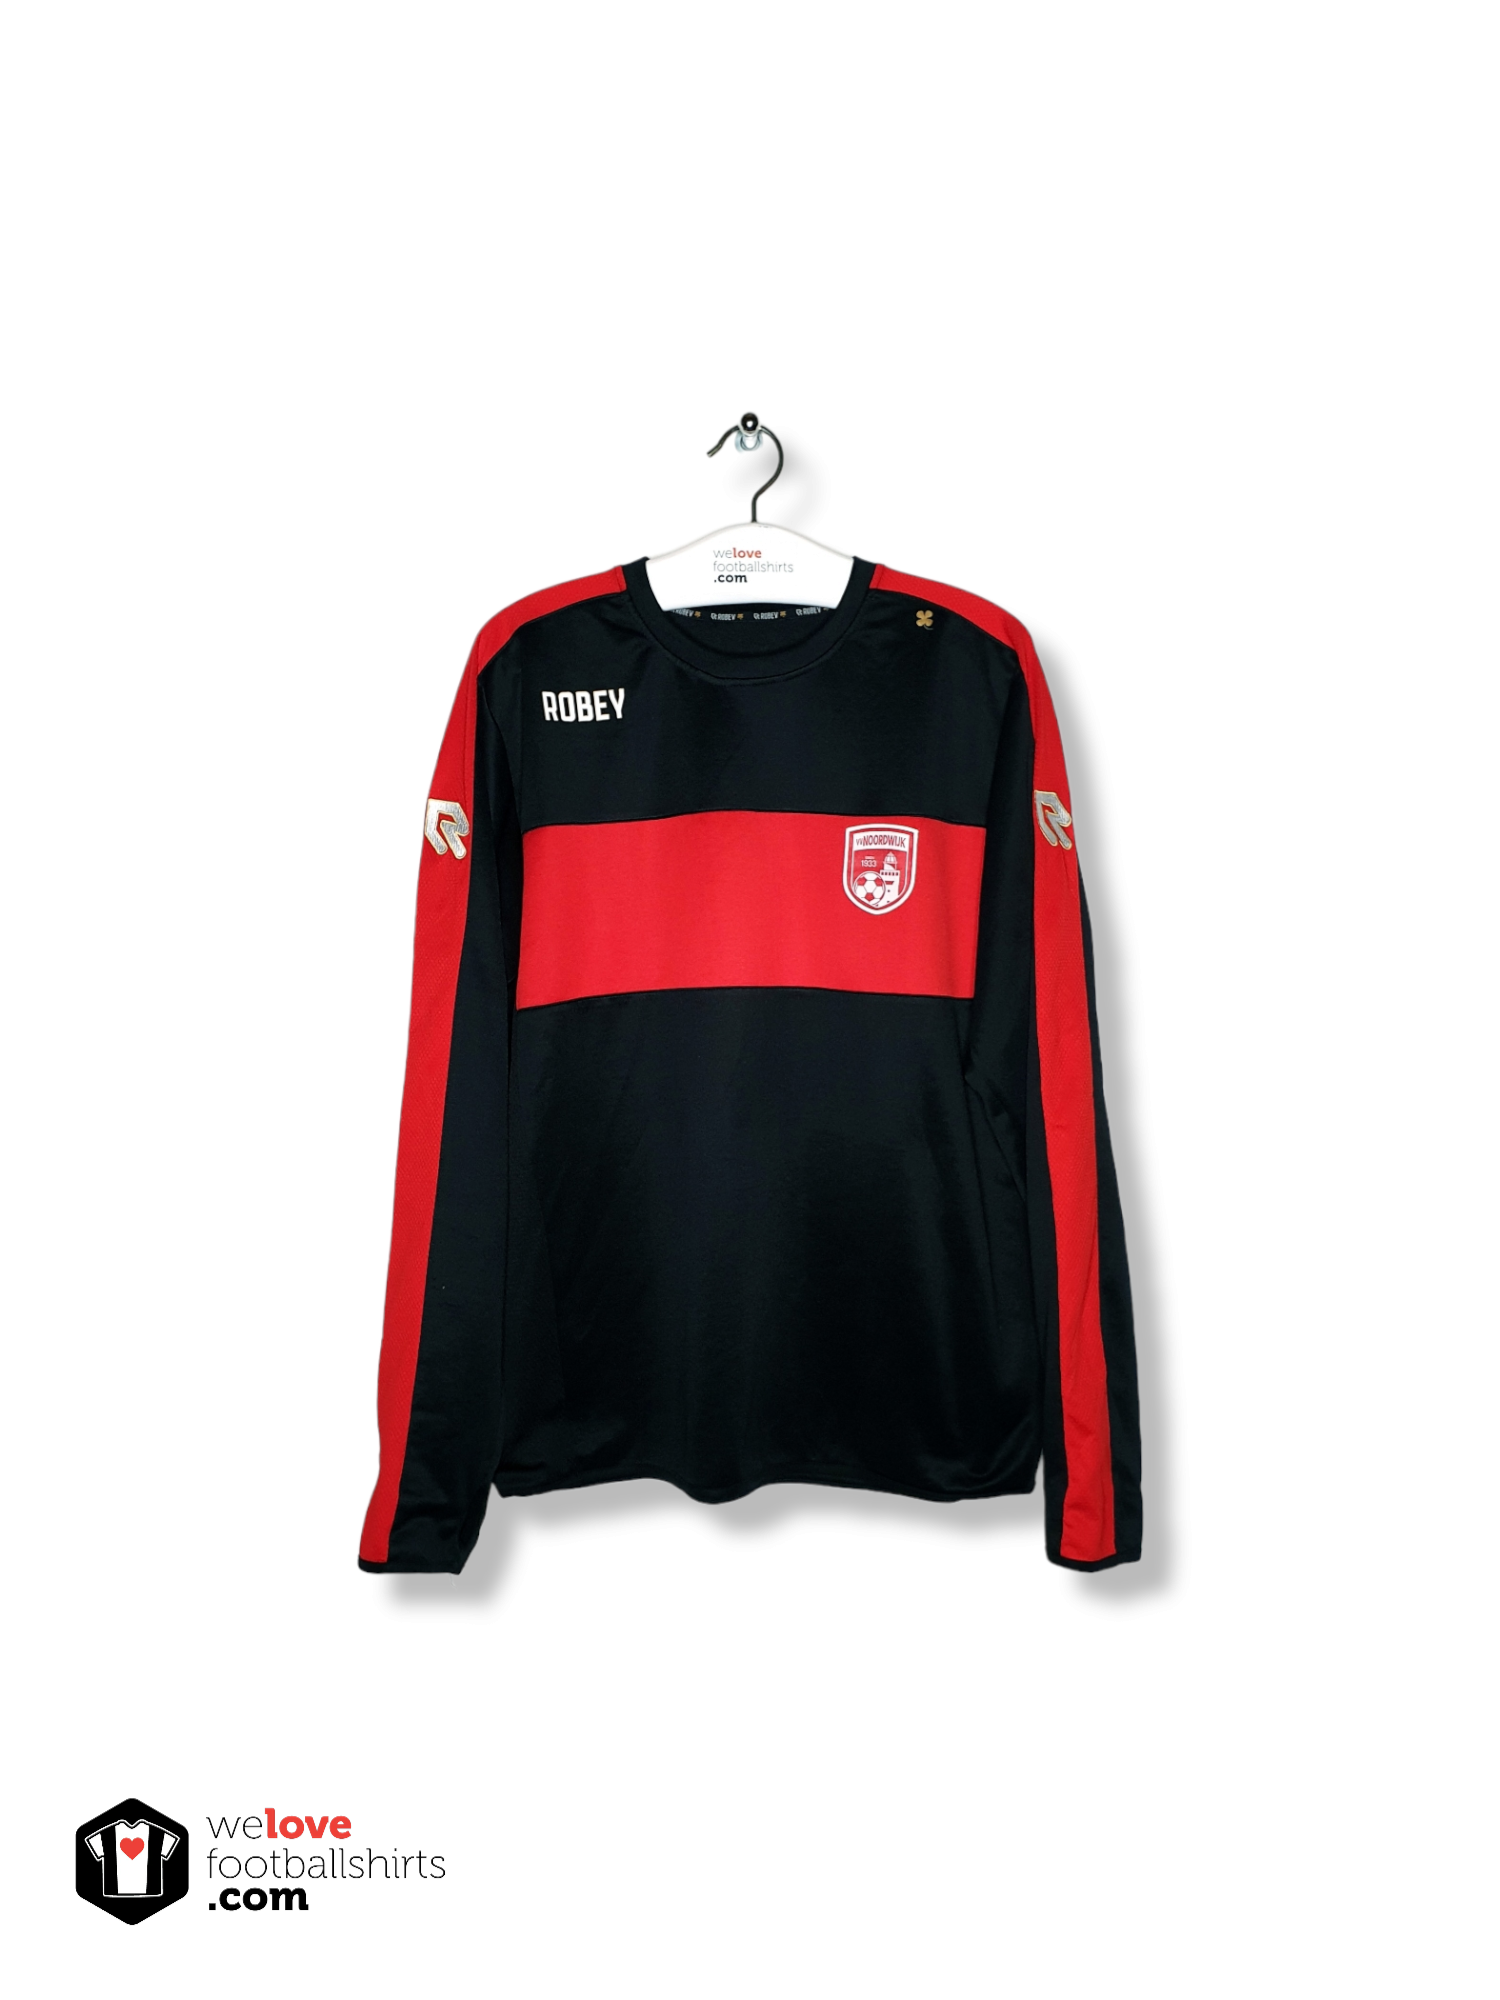 Ik wil niet Positief Vleien Robey voetbal sweater vv Noordwijk - Welovefootballshirts.com